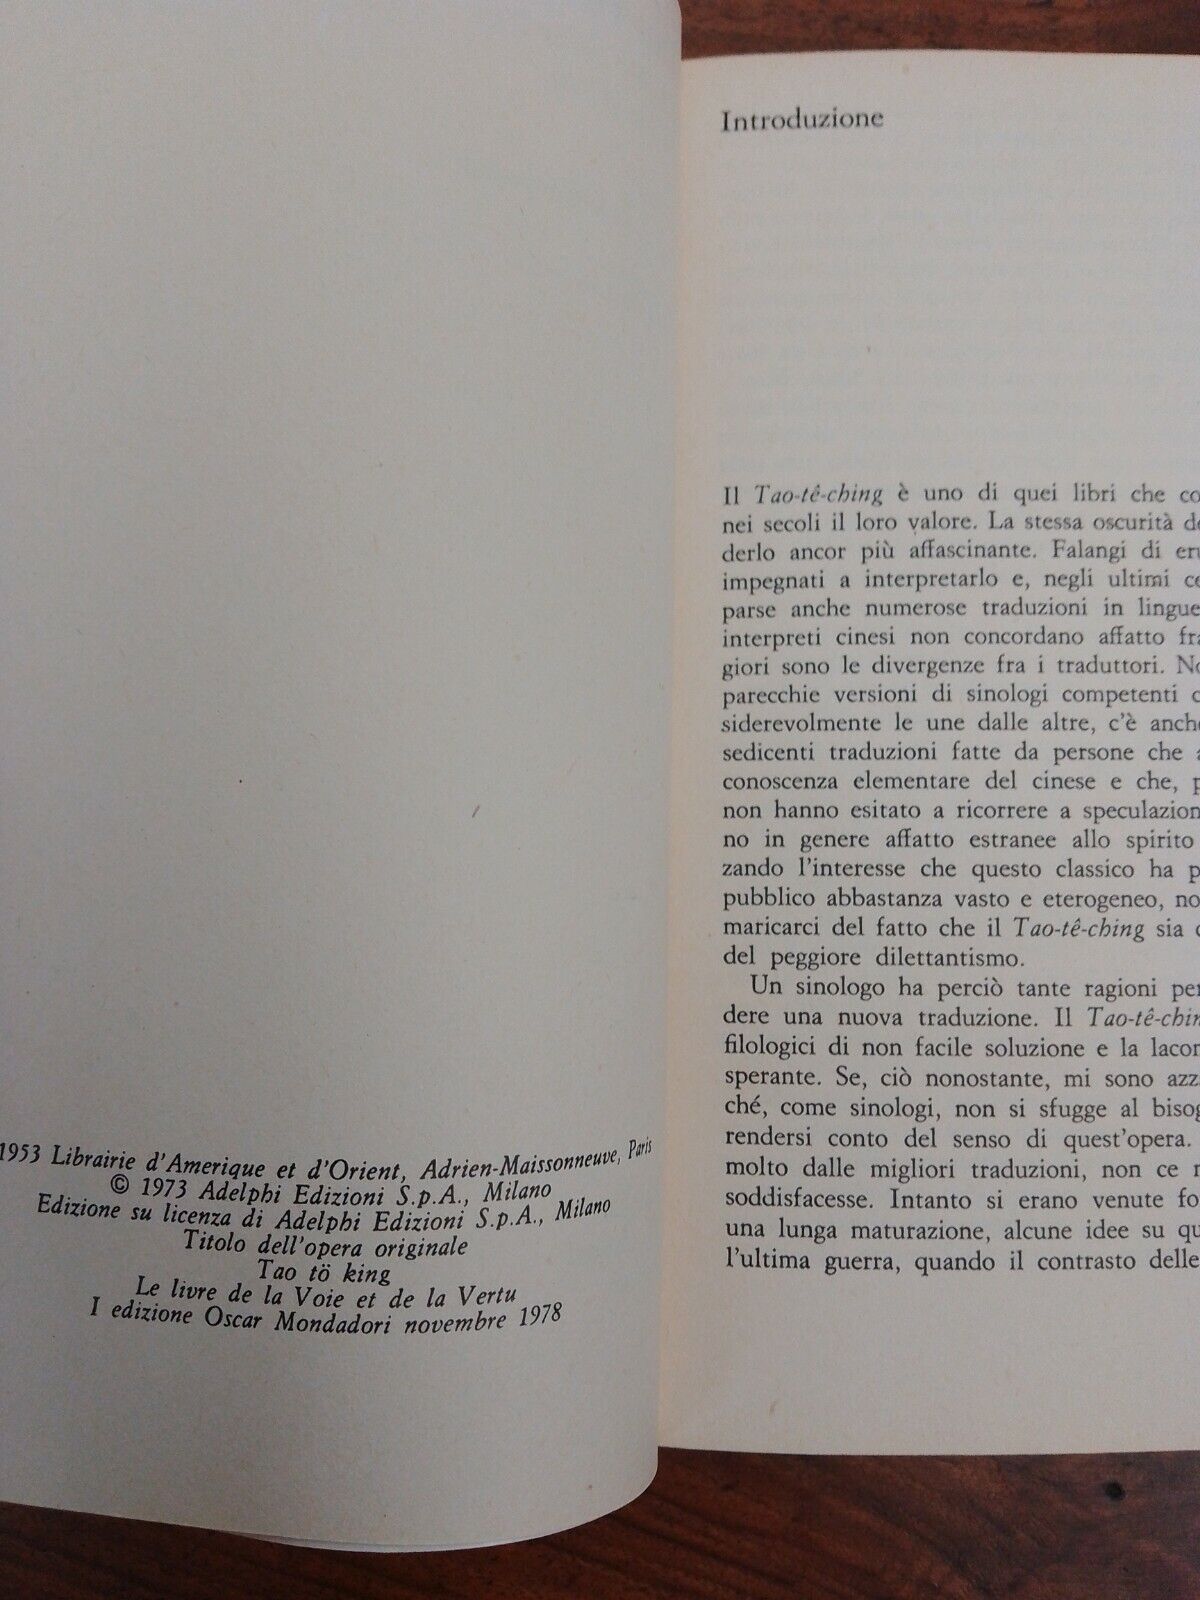 Tao Te Ching, il libro della via e della virtu', Duyvendak, Mondadori 1978